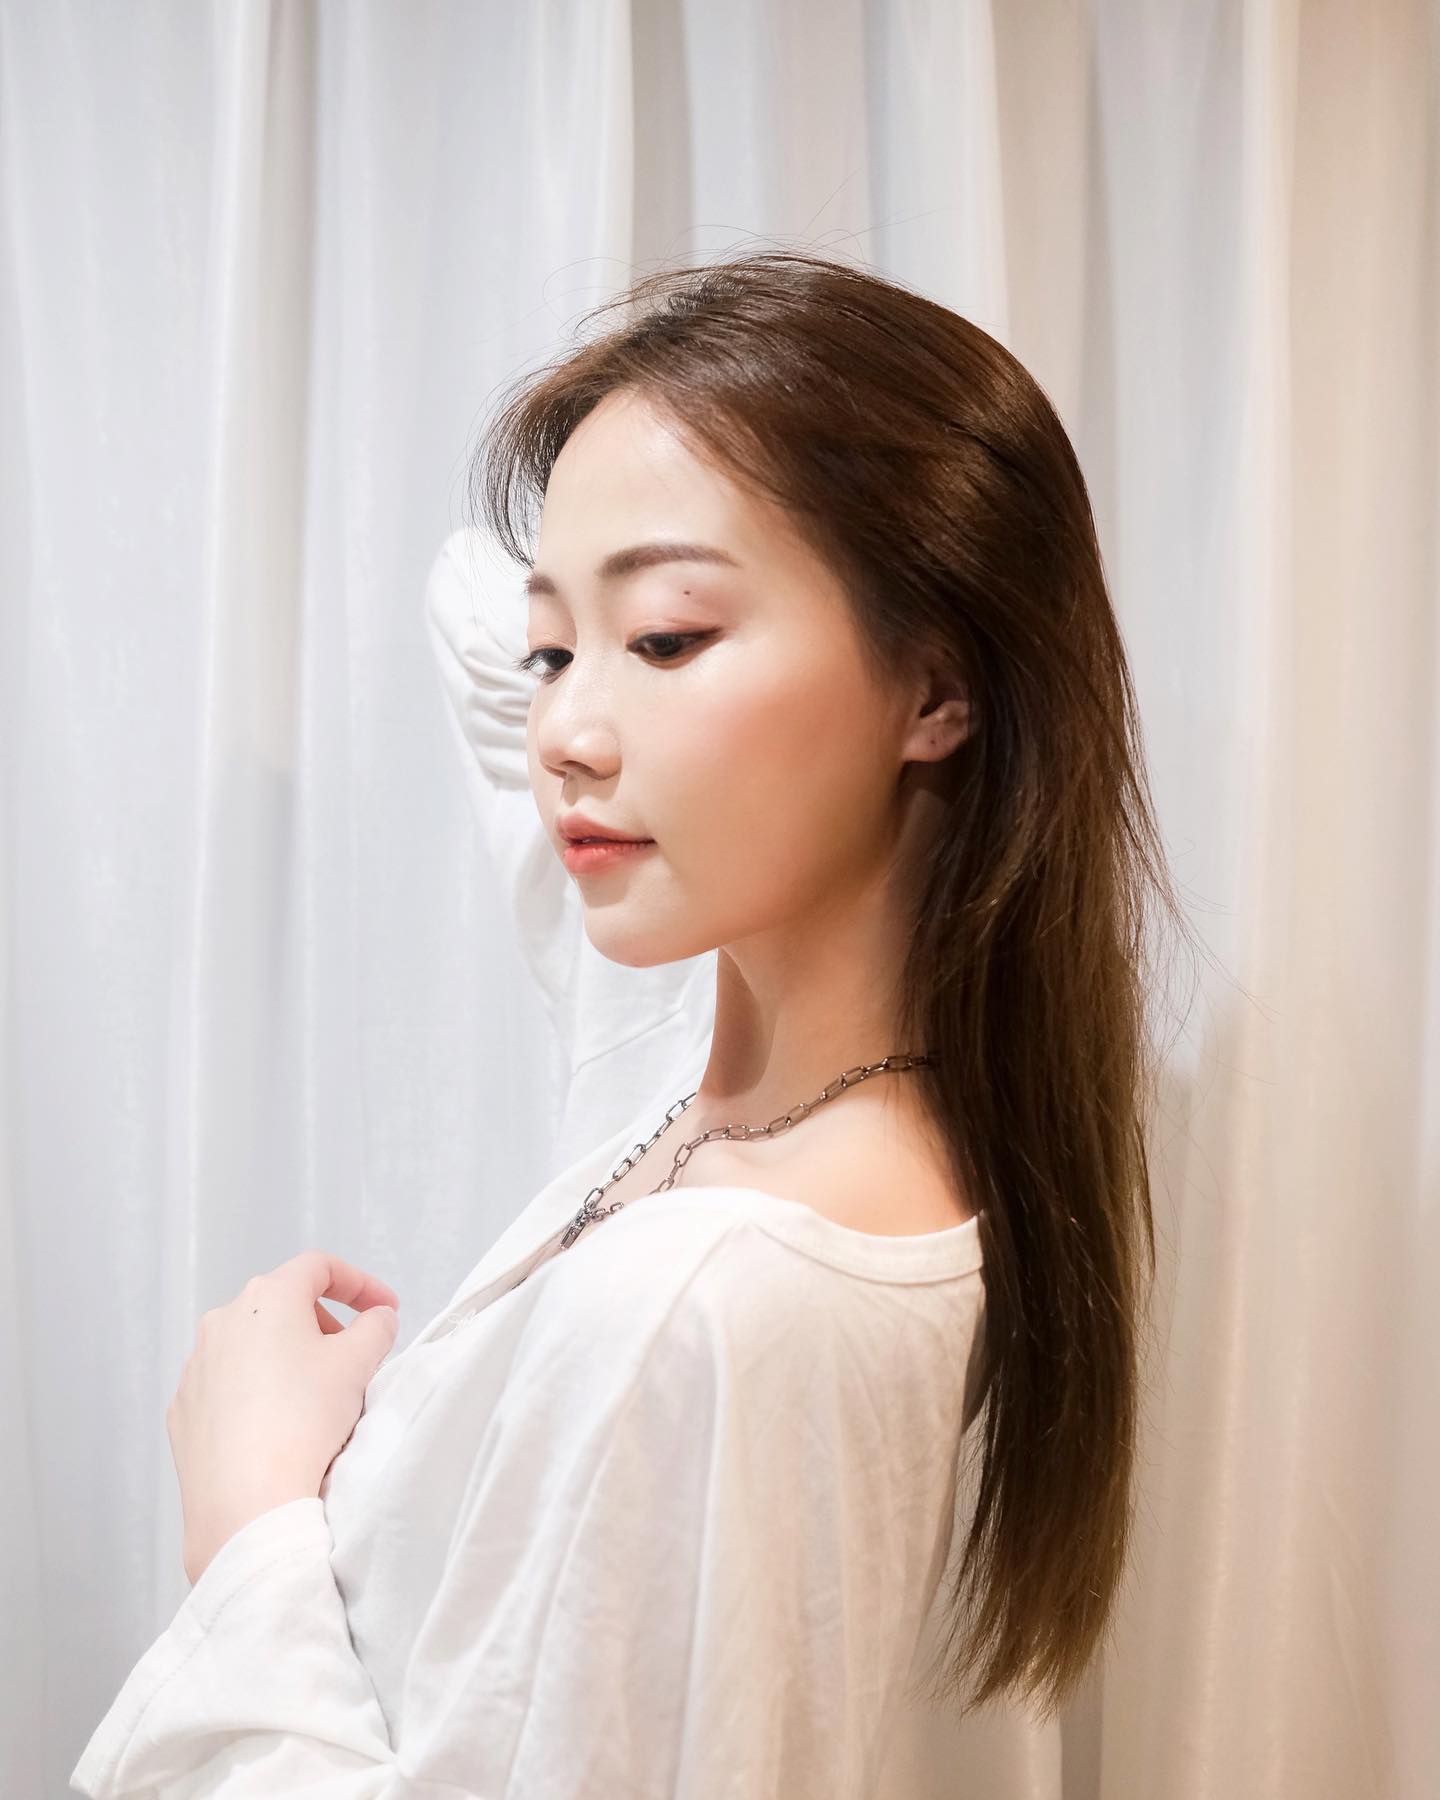 4 tuyệt chiêu dưỡng tóc sống còn học lỏm từ gái Hàn giúp tóc mềm mướt, bồng bềnh - Ảnh 3.